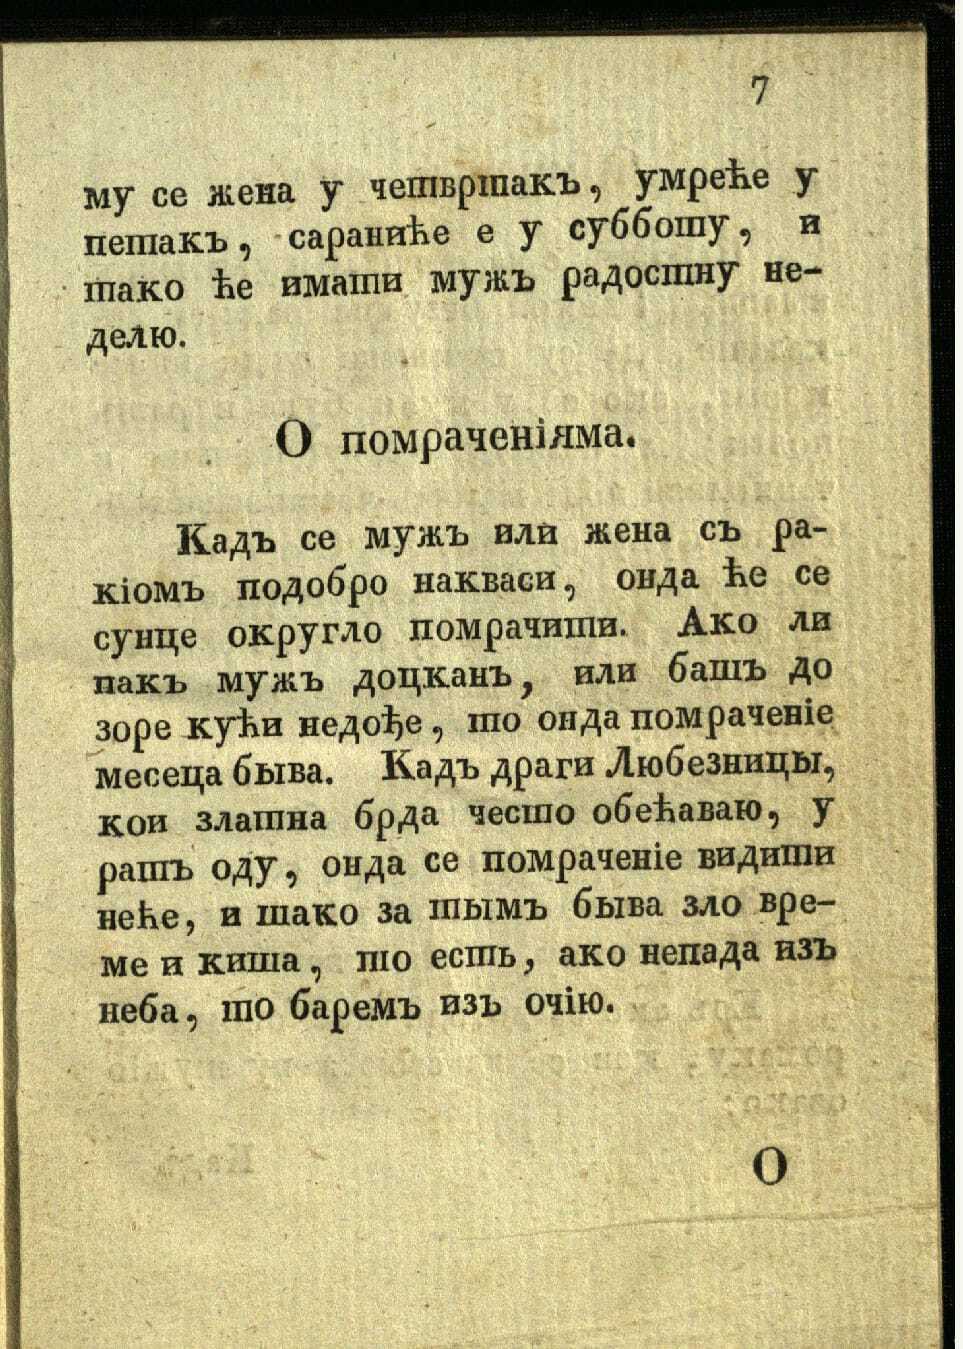 Сербский шуточный календарь на 1830 год. Часть 1 - "Злая жена"